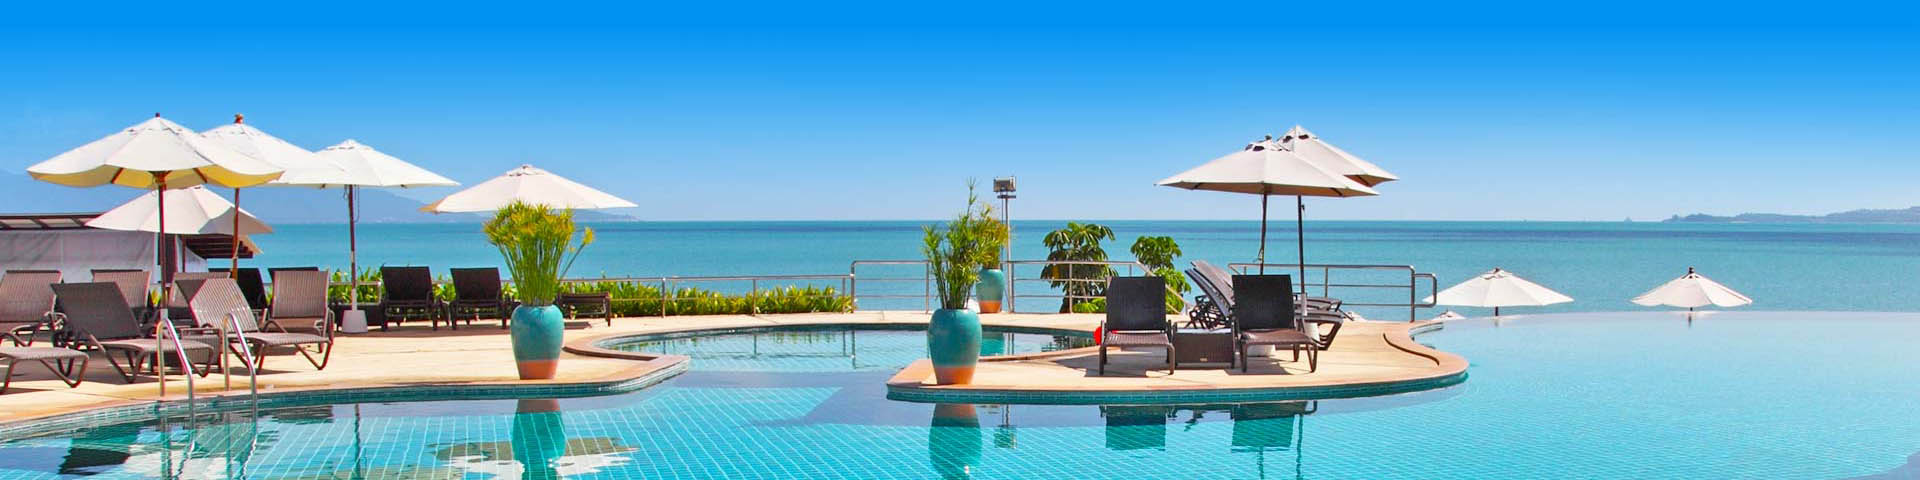 Luxe all inclusive resort met zwembad en ligbedden aan de zee